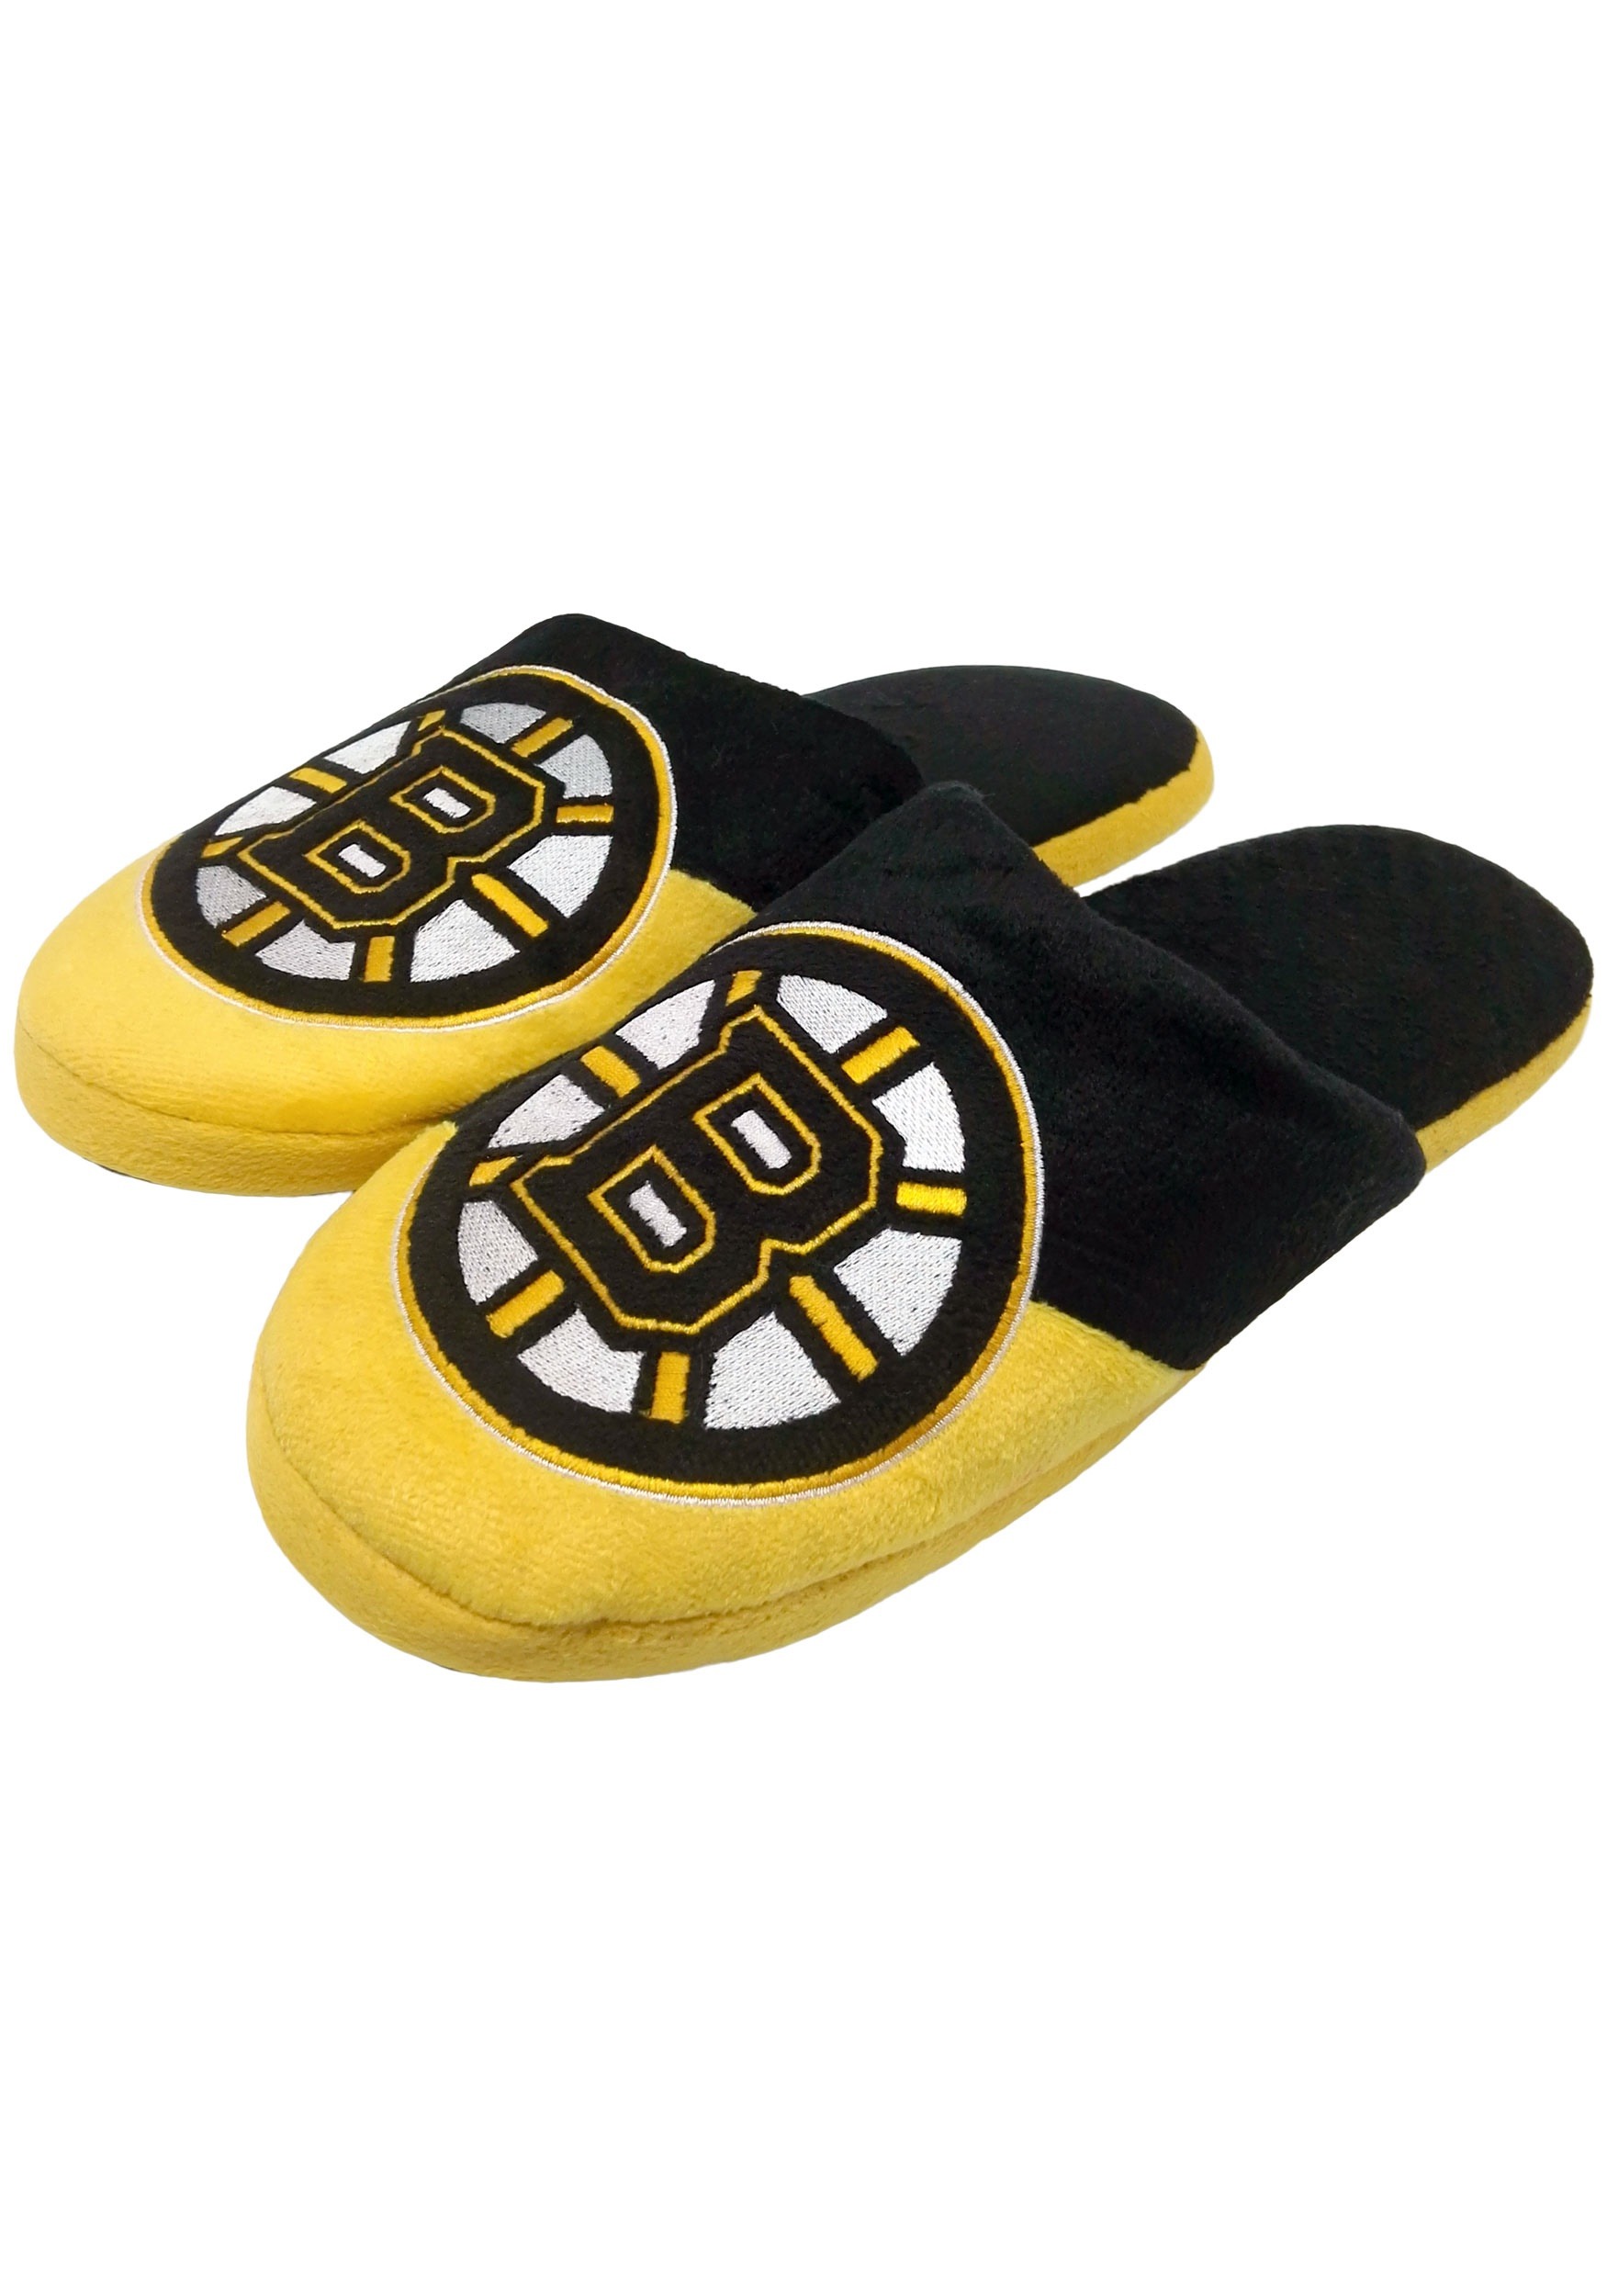 Boston Bruins Colorblock Slide Slippers